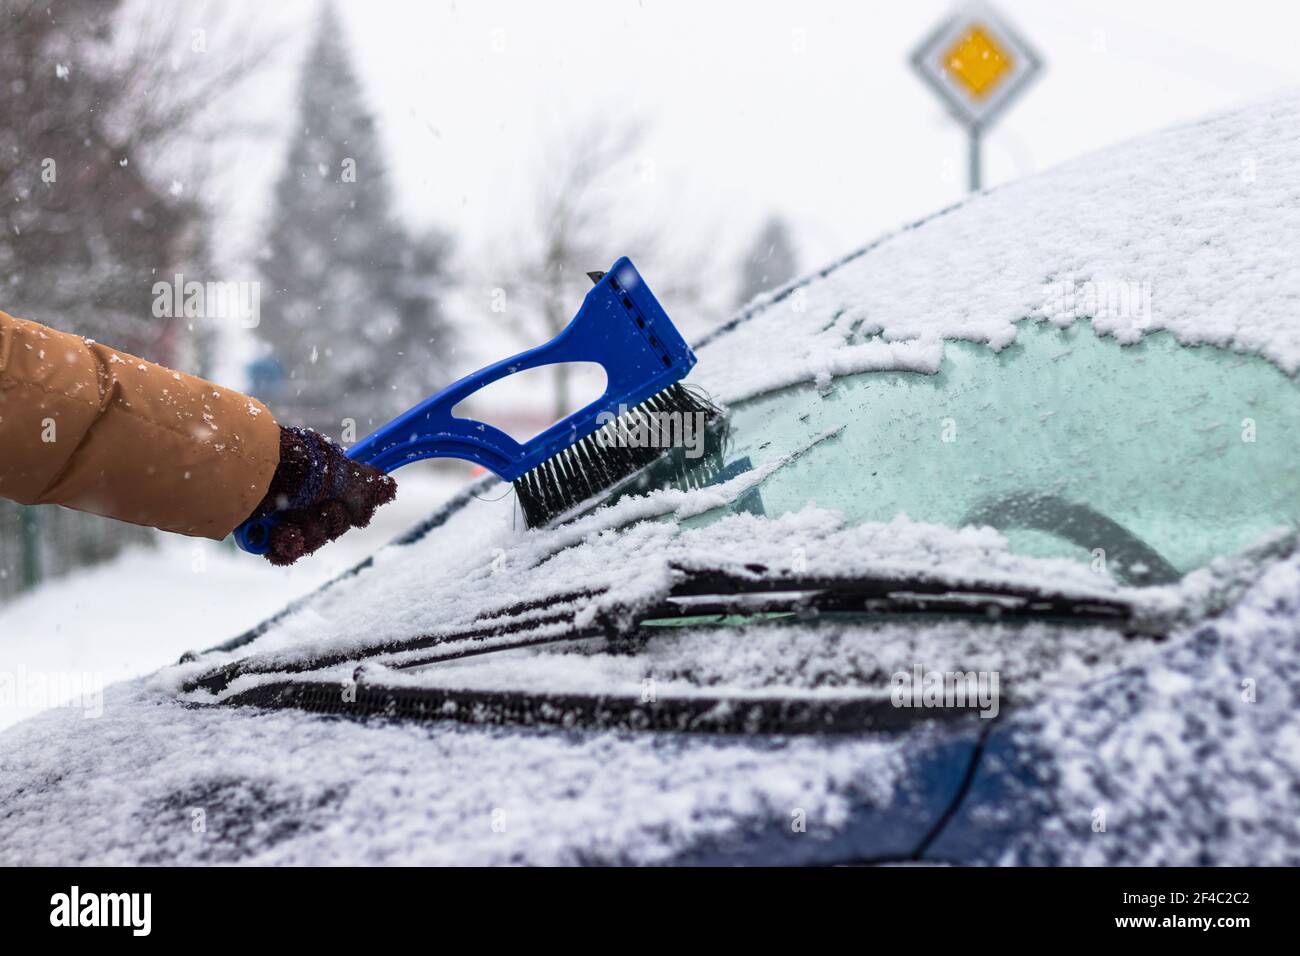 Reinigung eines eisigen Fensters an einem Auto mit Eiskratzer.  Schneeschaber. Kalt verschneit und frostig Morgen. Gefrorenes Autofenster  Stockfotografie - Alamy